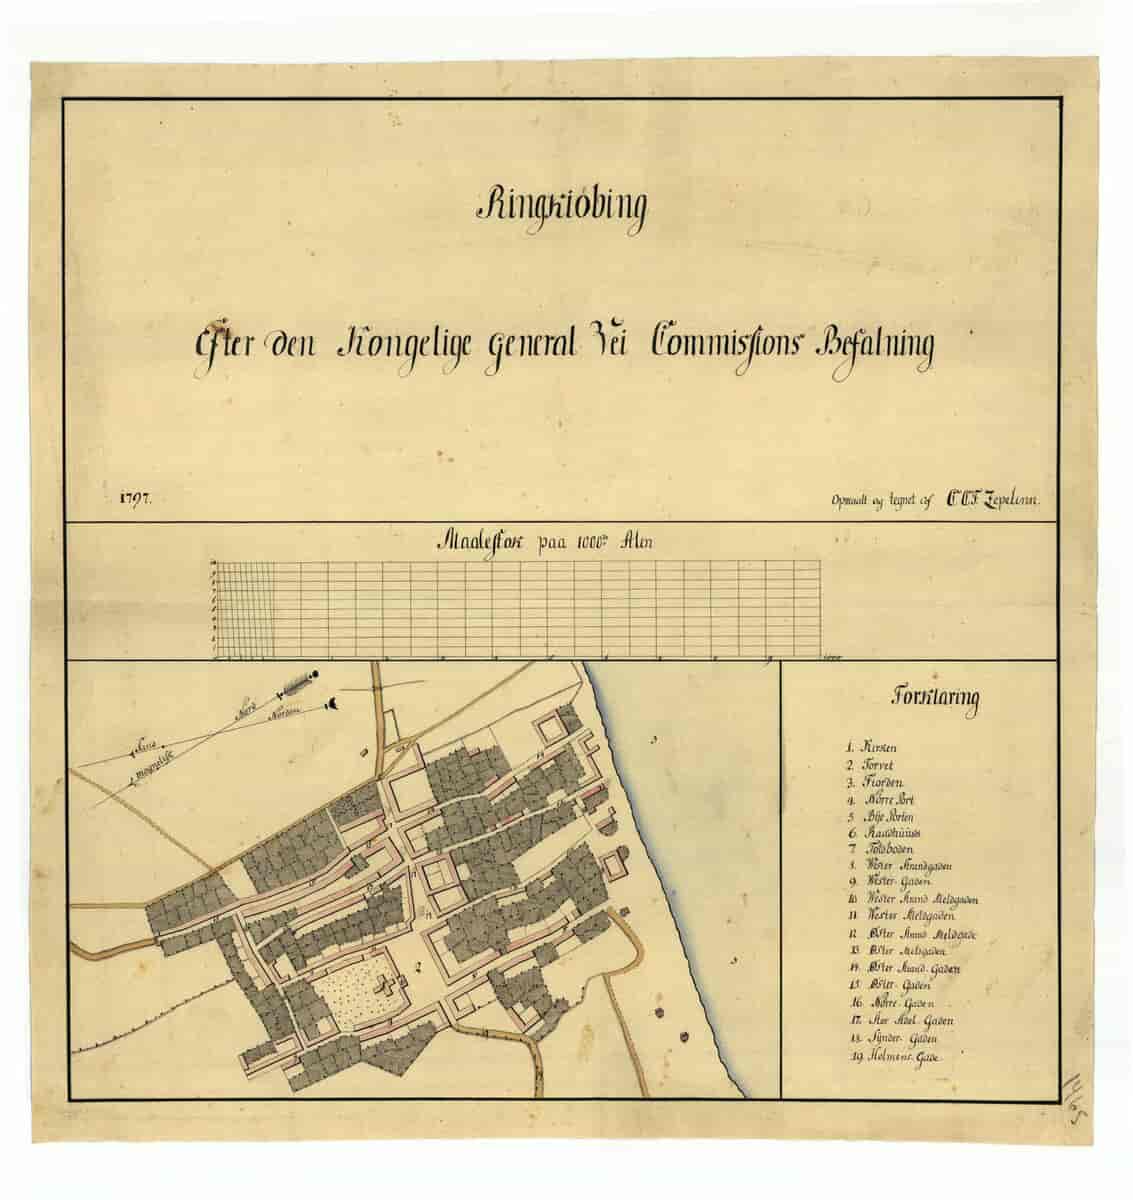 Kort over Ringkøbinf fra 1797